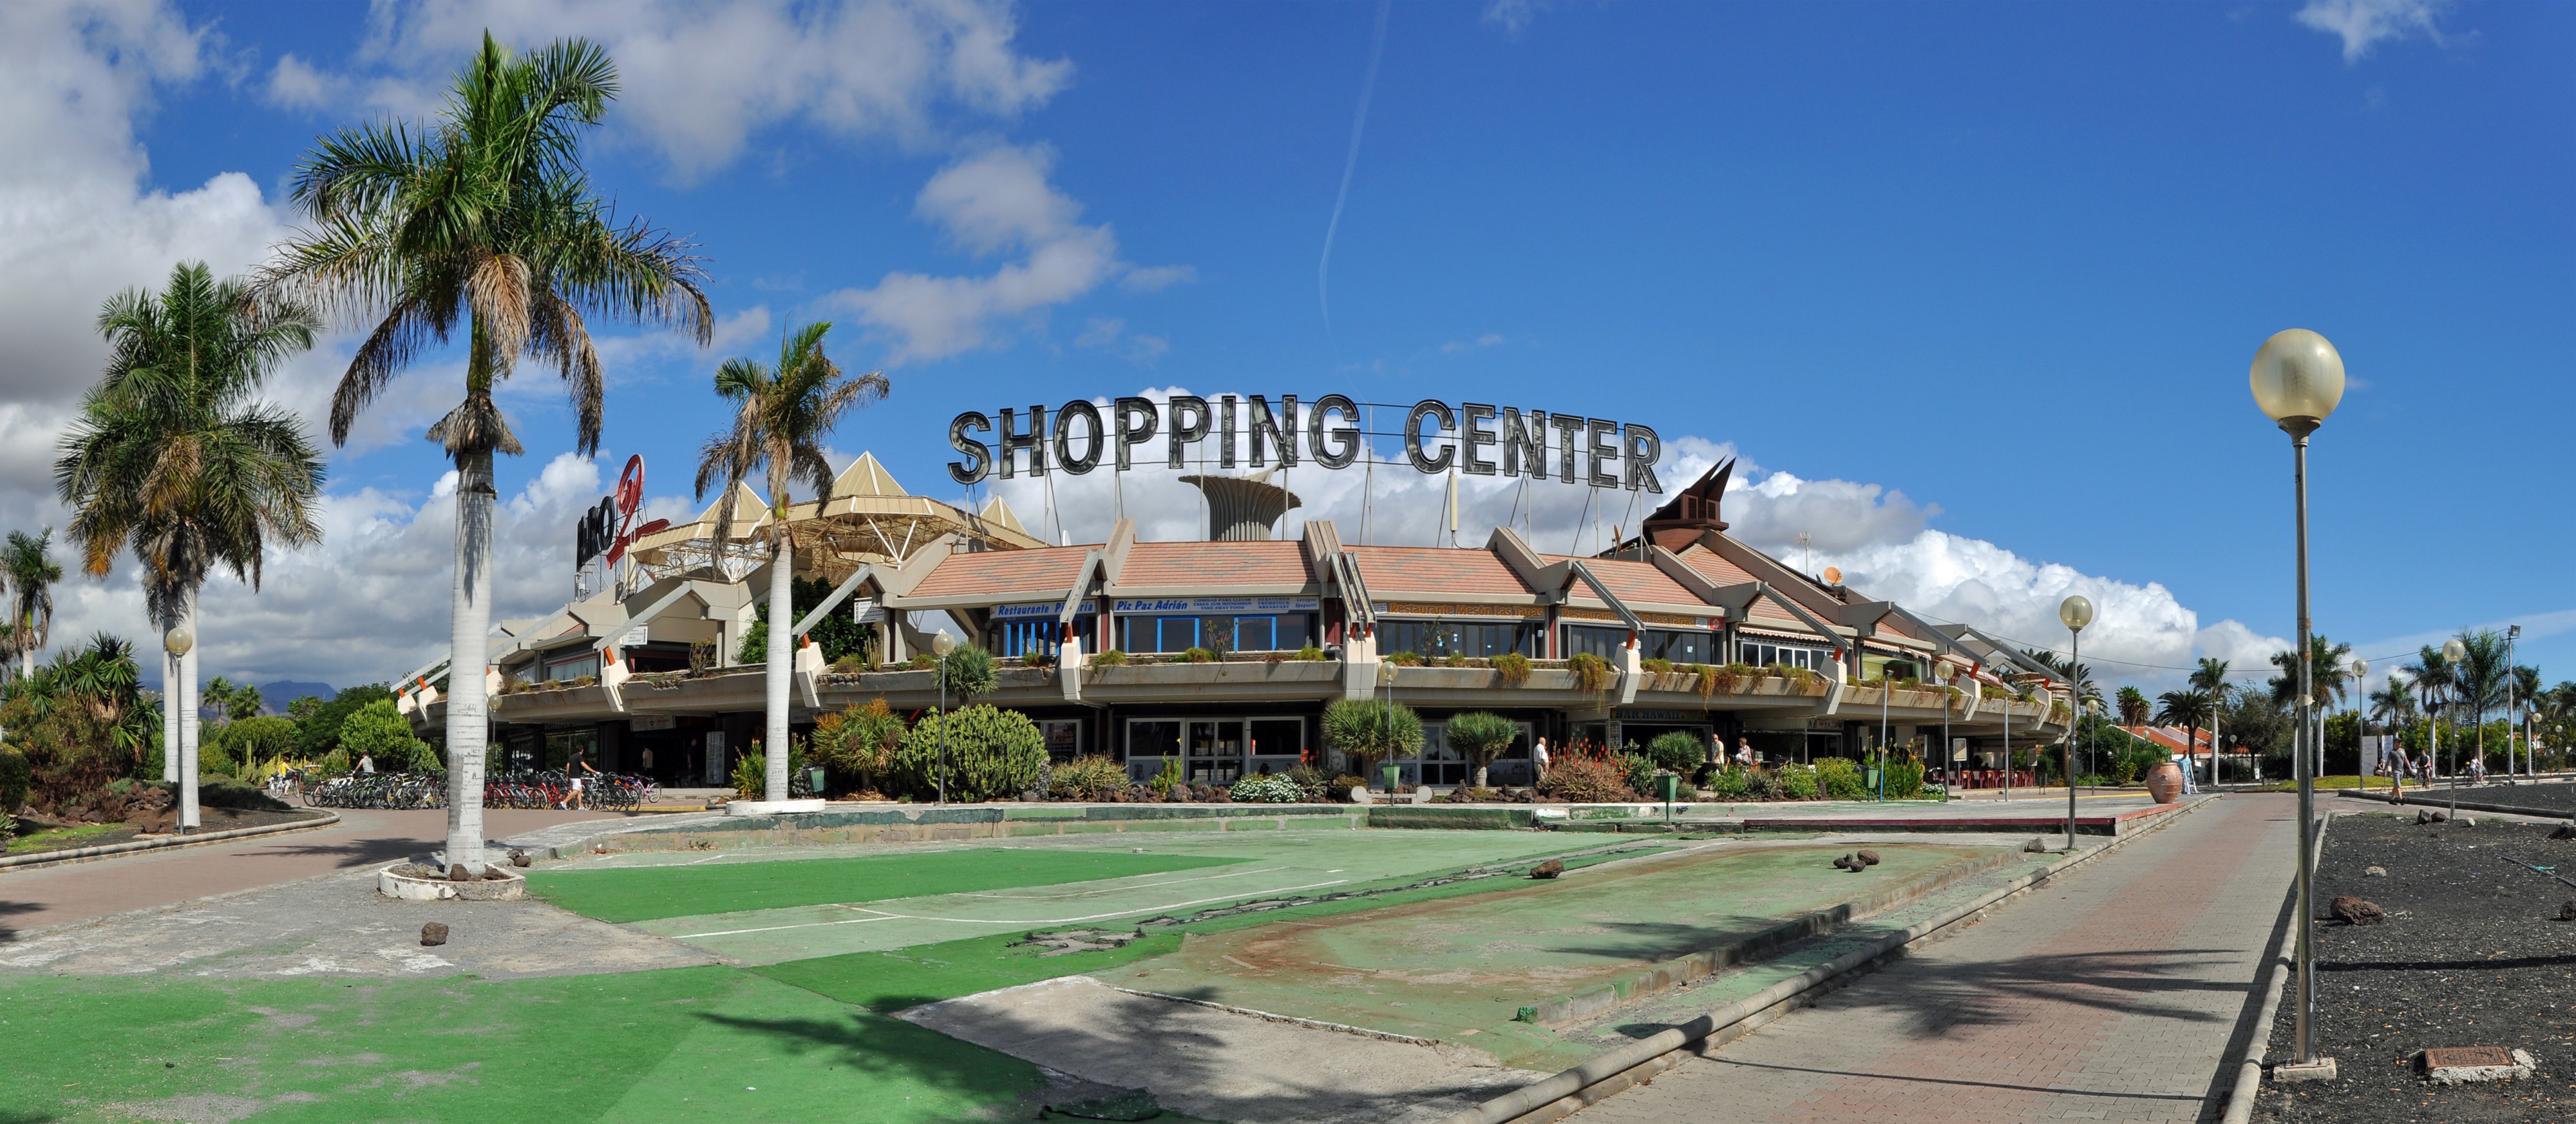 GC Maspalomas Shopping Center R01